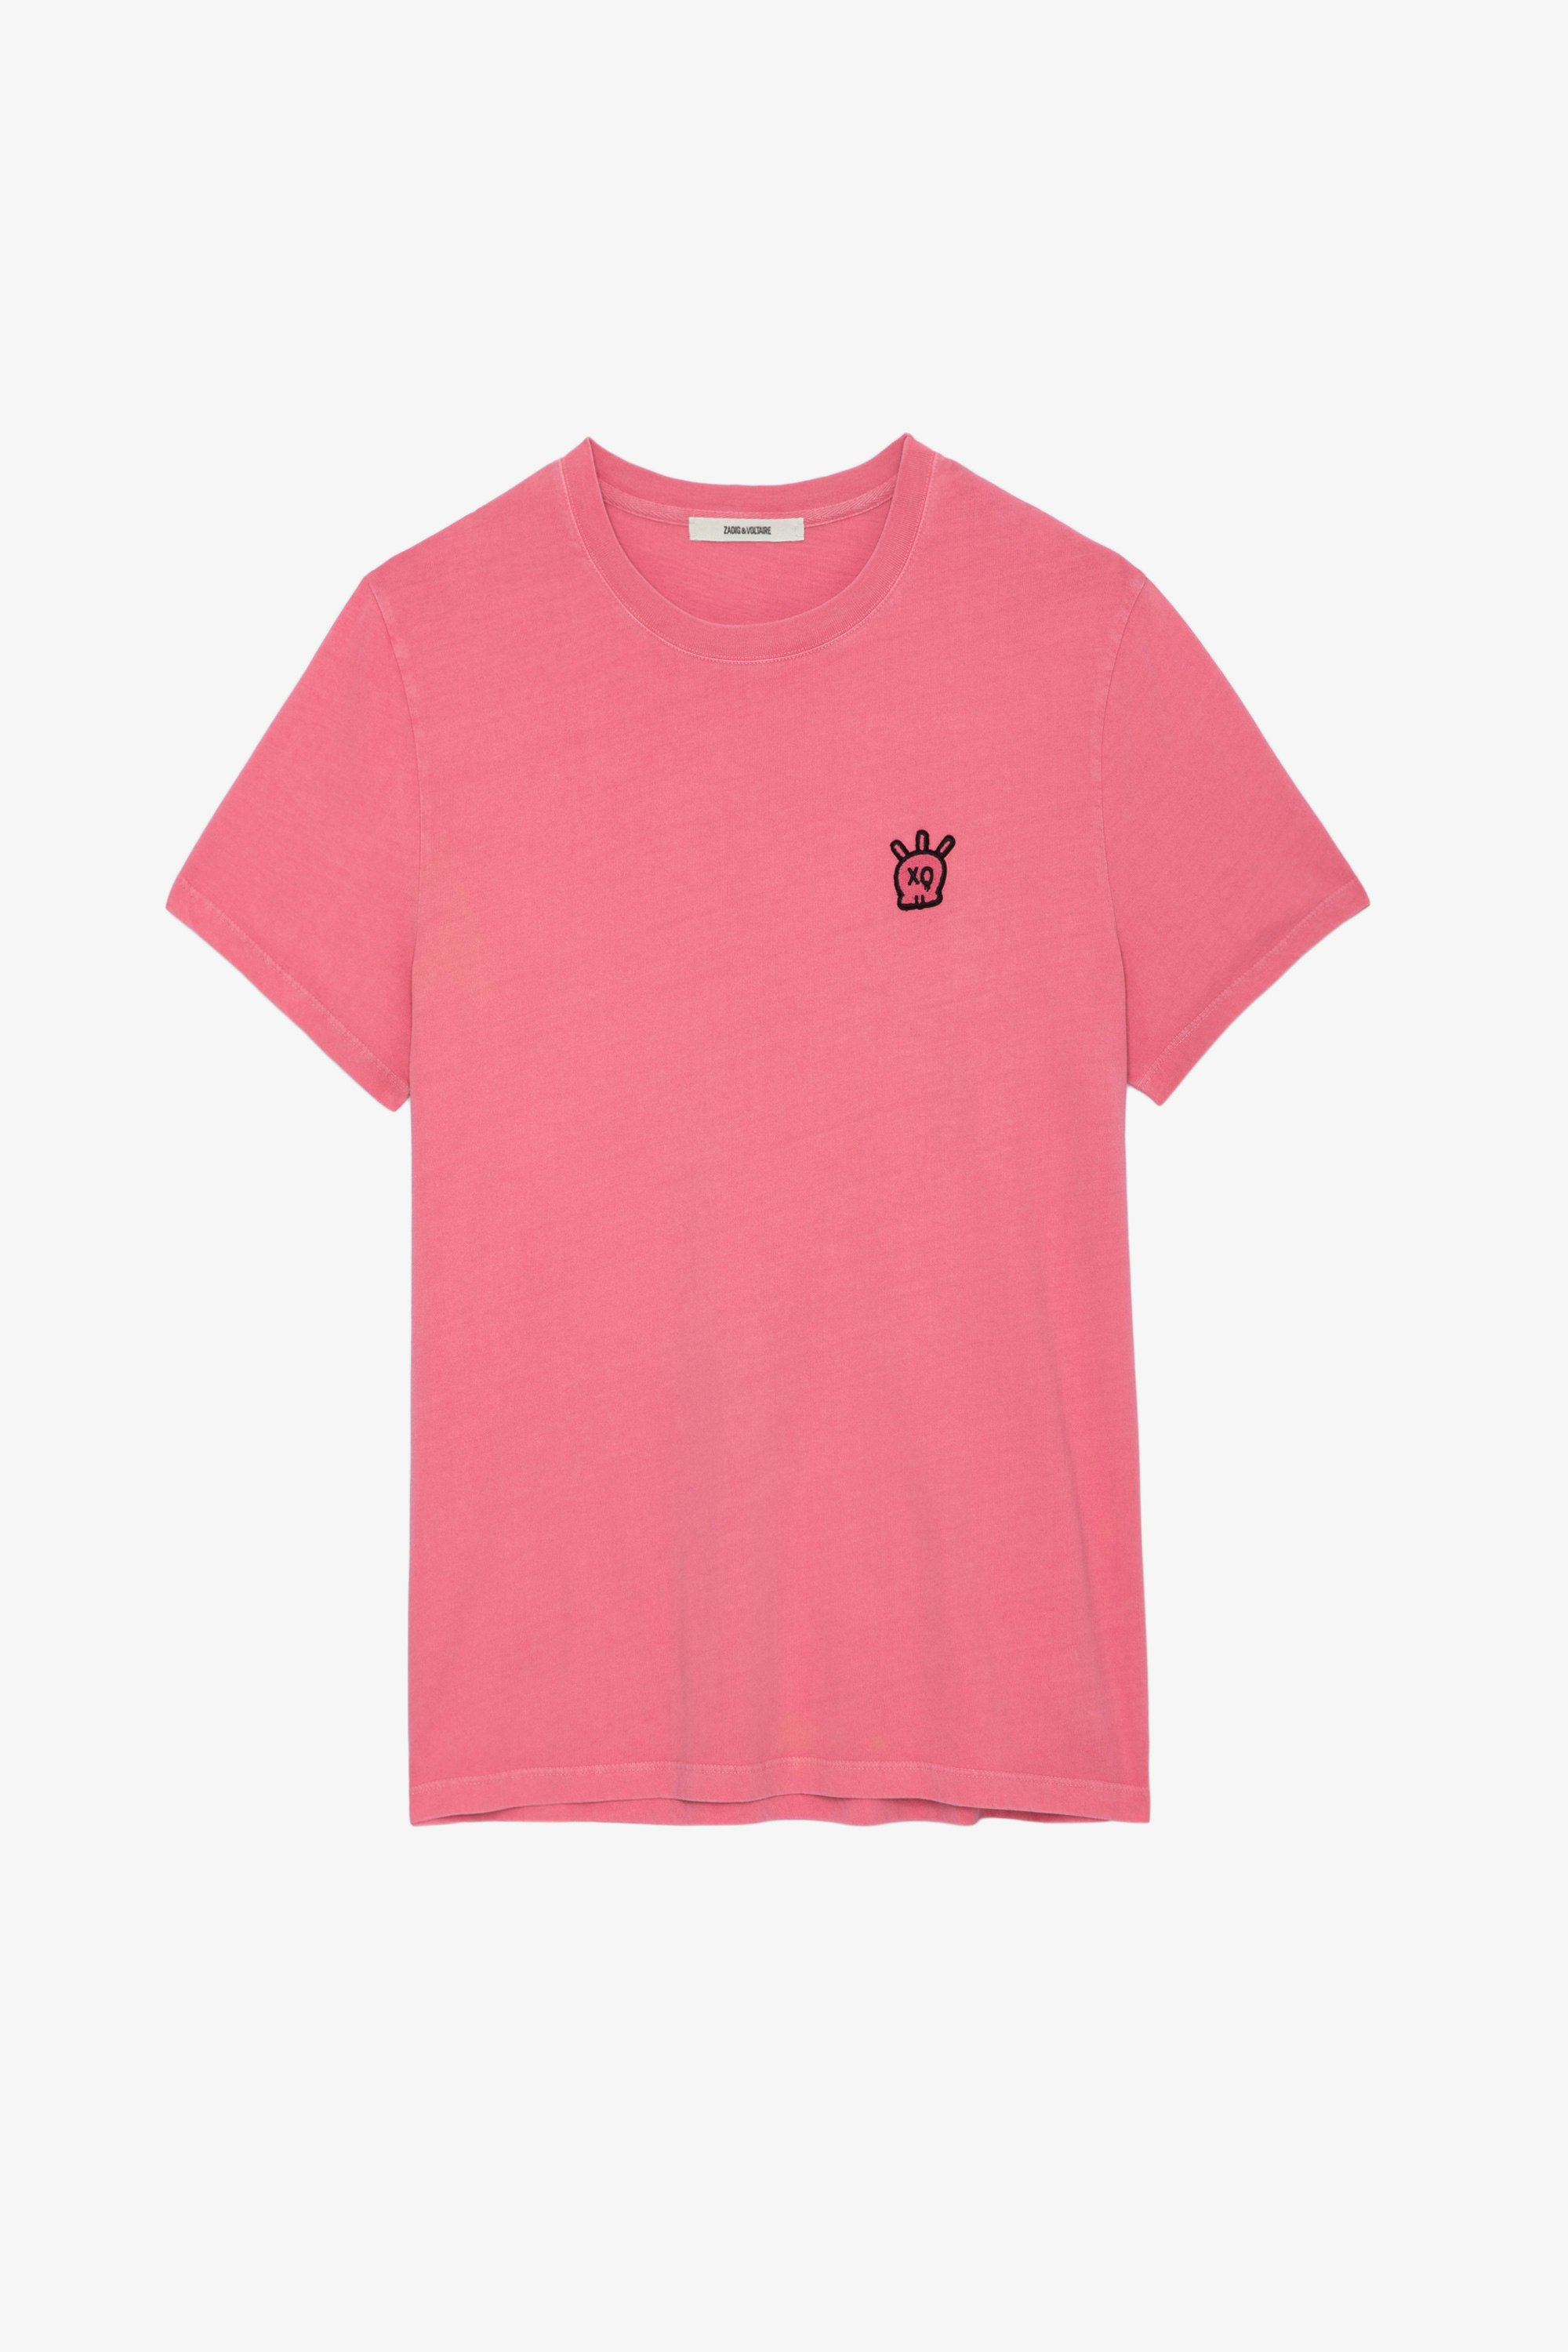 T-shirt Tommy Skull XO - T-shirt in cotone rosa girocollo con maniche corte e toppa Skull XO.